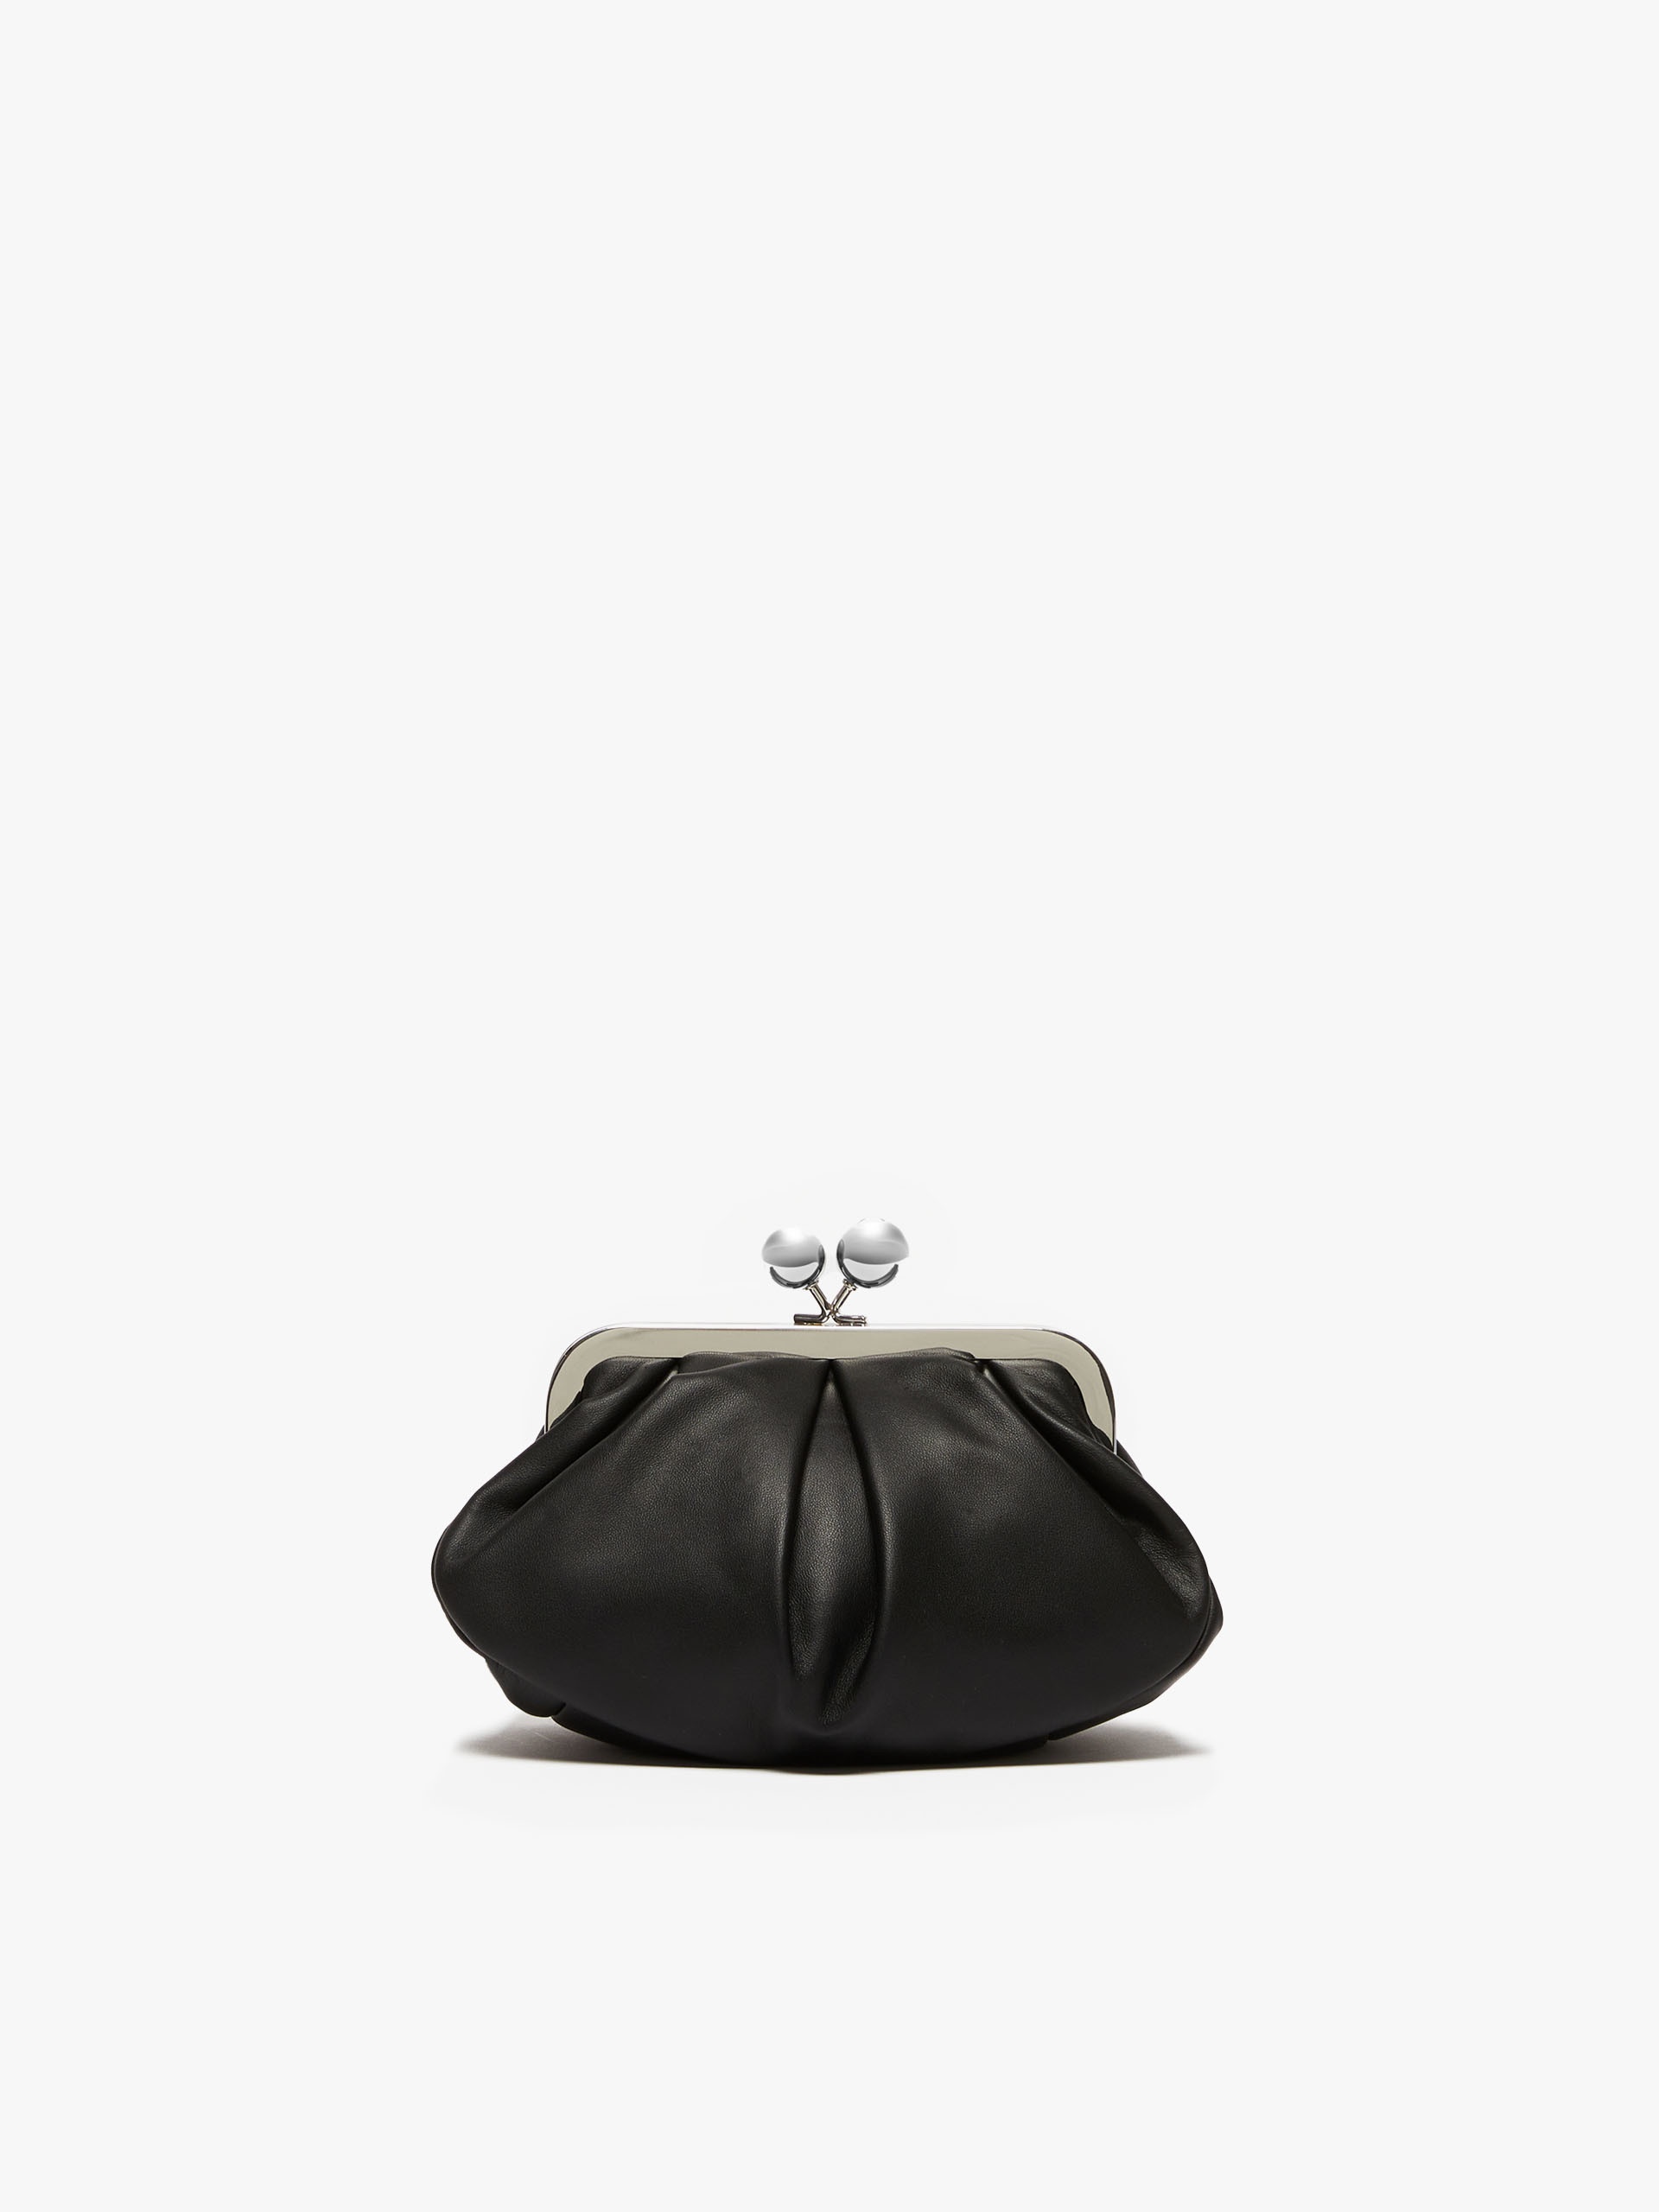 PRATI Small Pasticcino Bag in nappa leather - 3